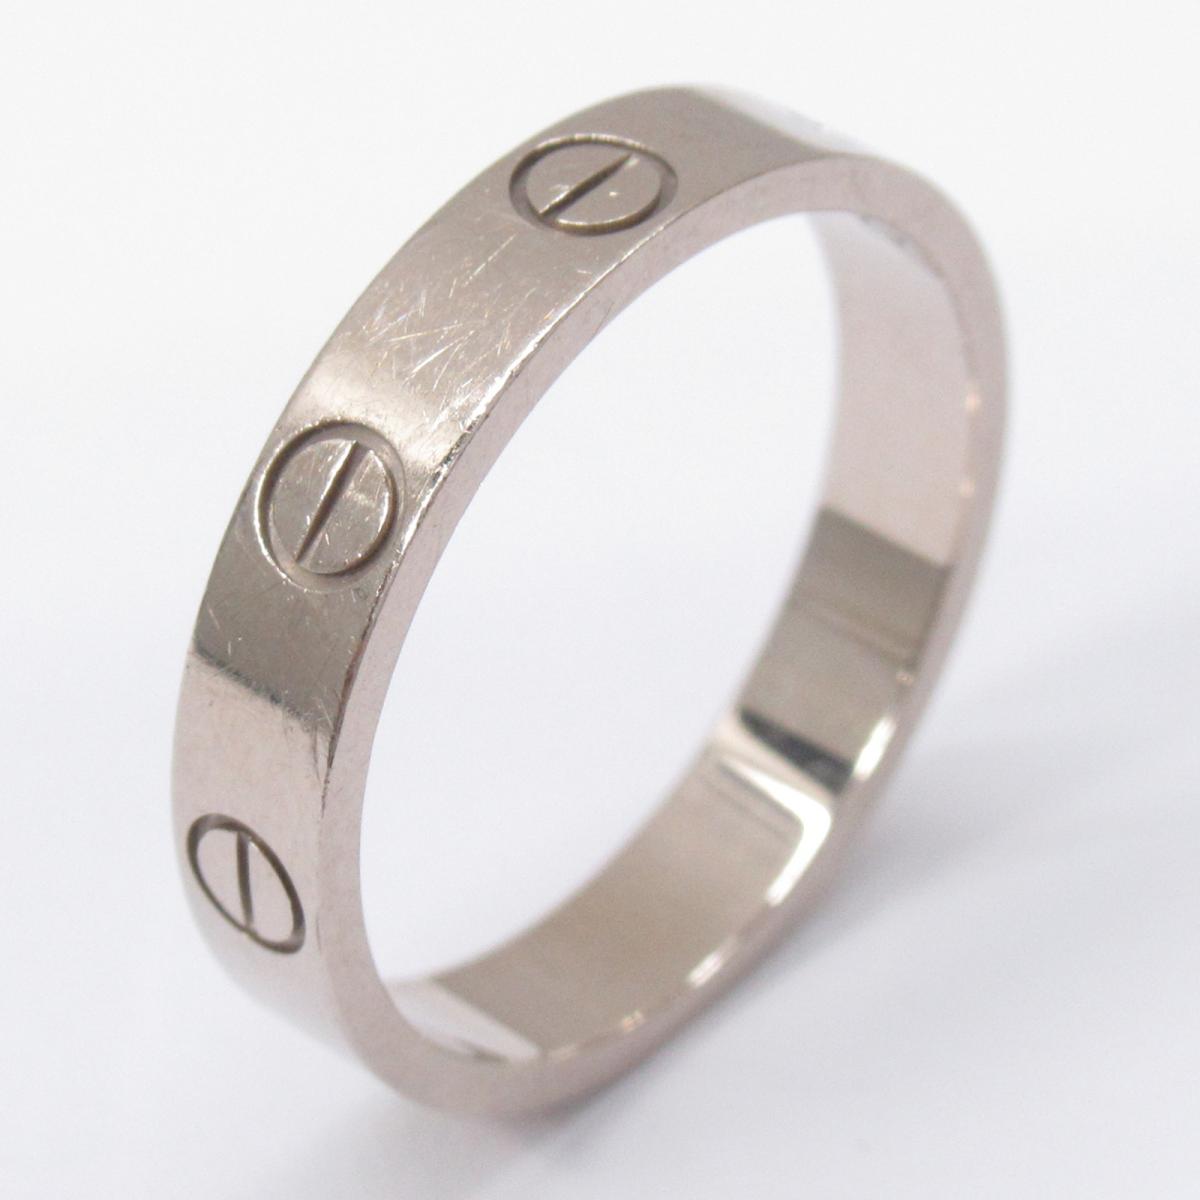 カルティエ ミニラブリング 指輪 ブランドジュエリー レディース K18WG (750) ホワイトゴールド シルバー (CPK225) 【中古】